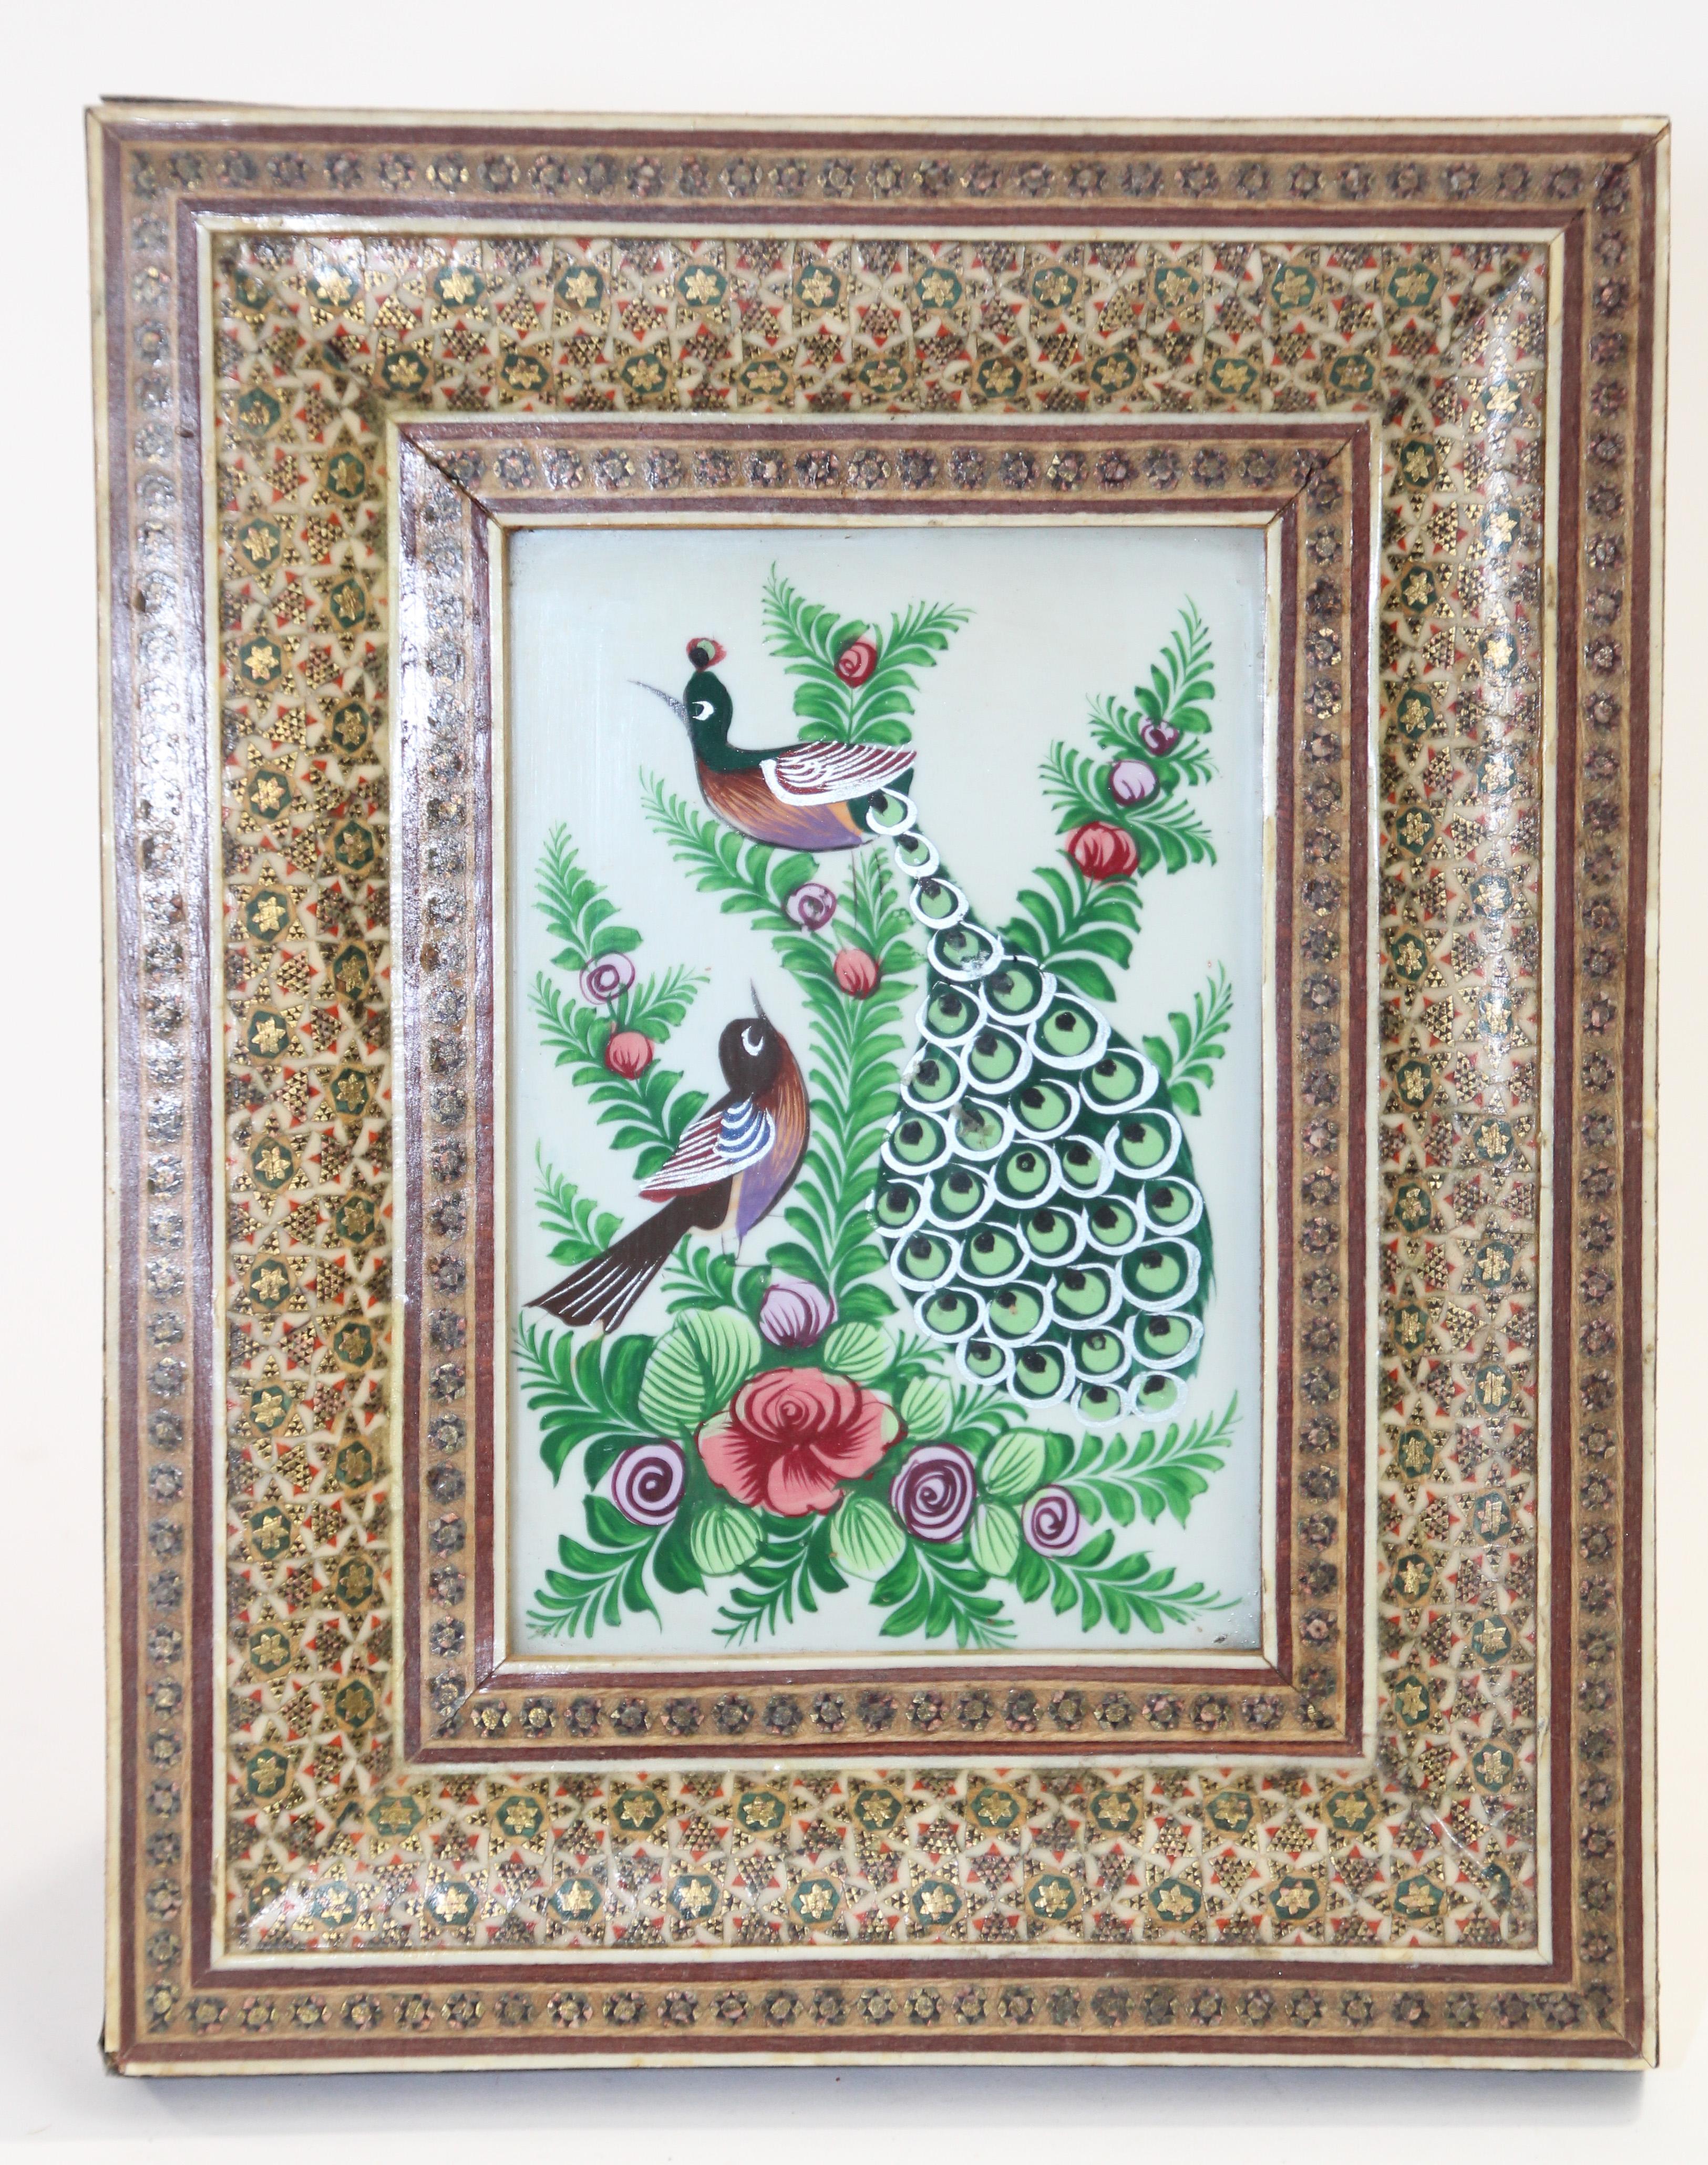 Nahöstliche Miniaturmalerei mit Pfauen, gerahmt in einem maurischen Bilderrahmen mit Mikro-Mosaik-Intarsien.
Nahöstliche Miniaturmalerei auf Muschel, sehr feine und farbenfrohe Malerei in einer
aufwendig eingelegter Mosaikrahmen mit floralem und